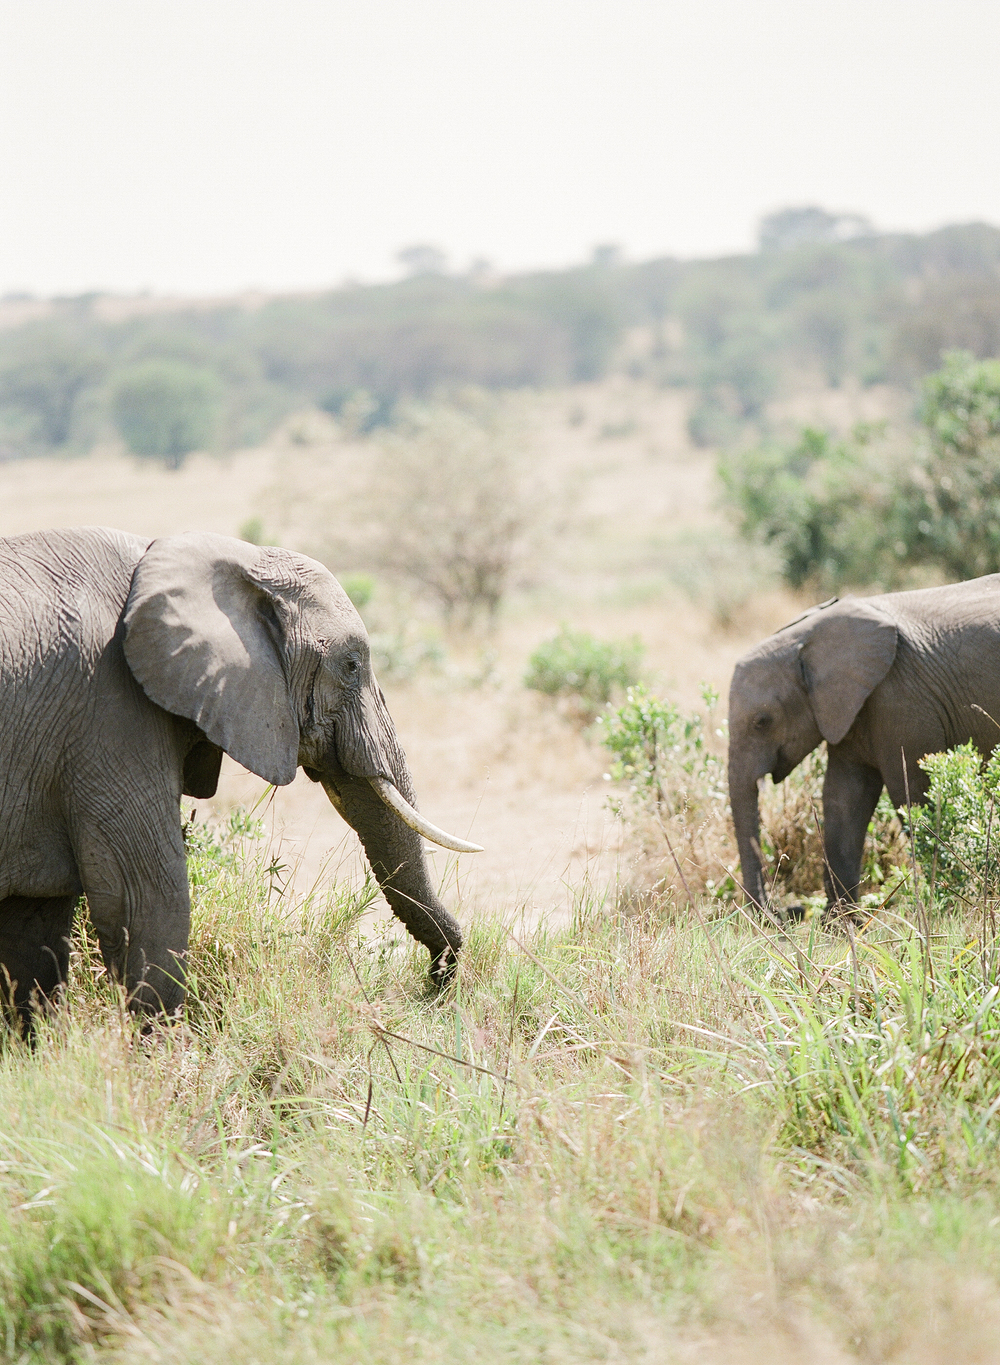 Elephants in Africa